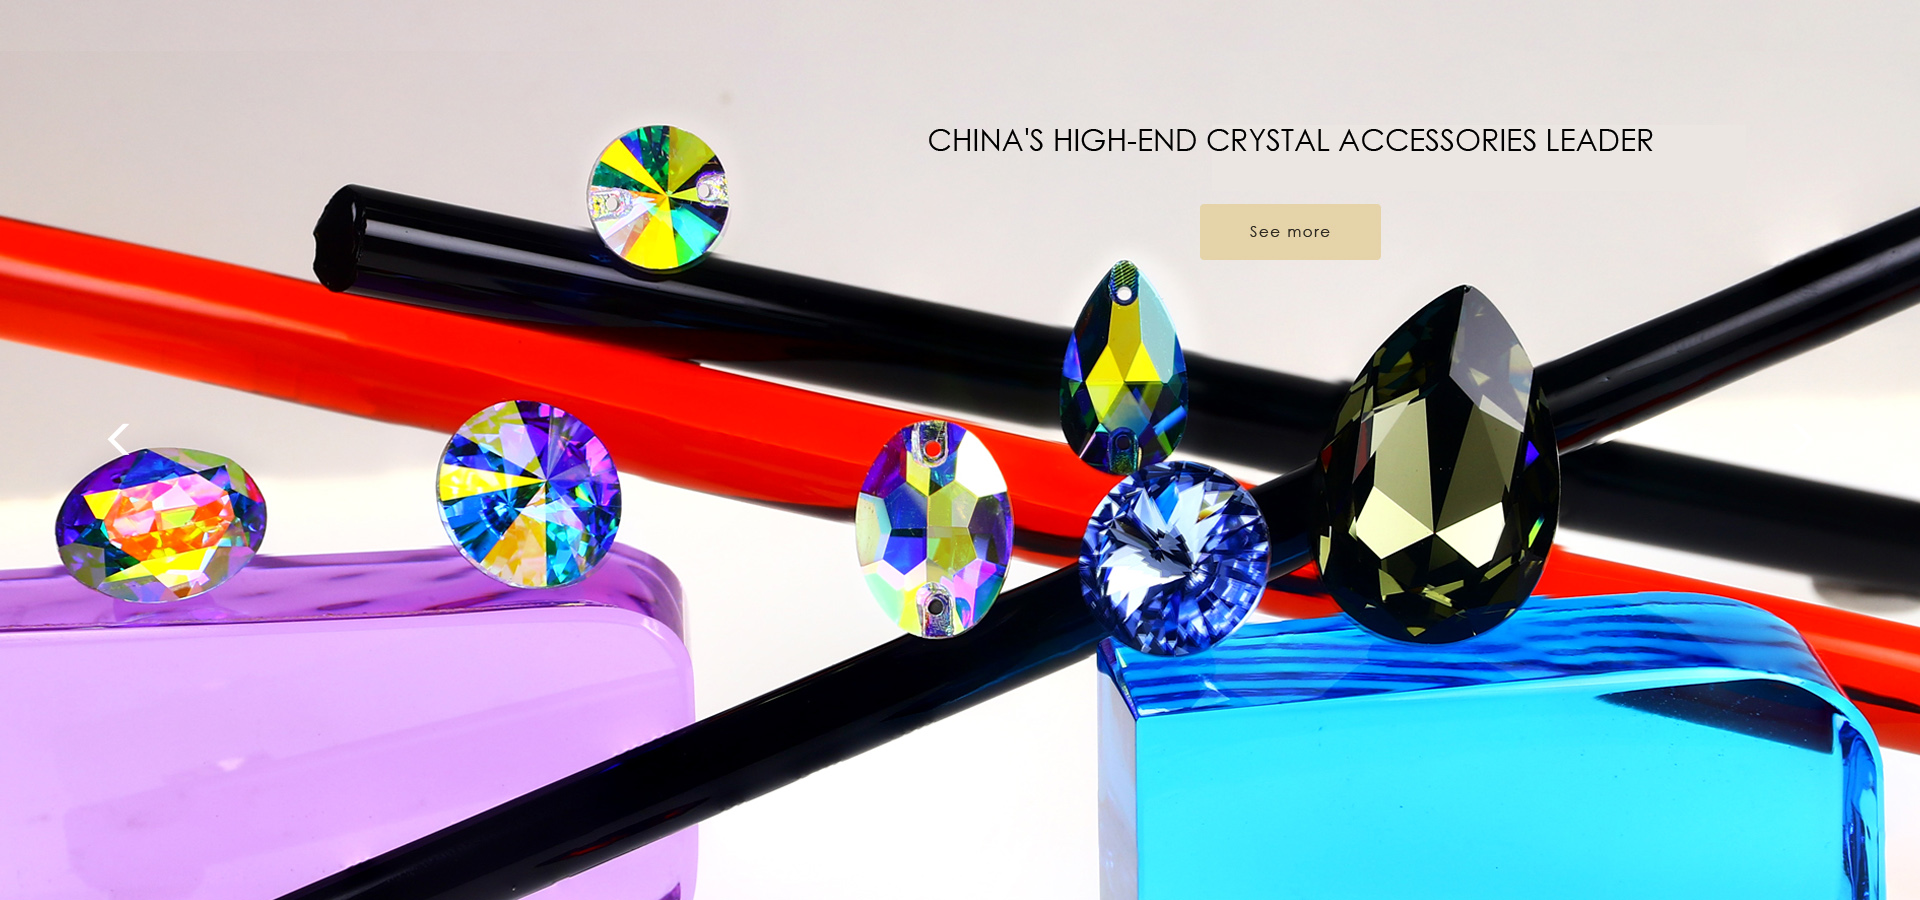  中国高端水晶配件